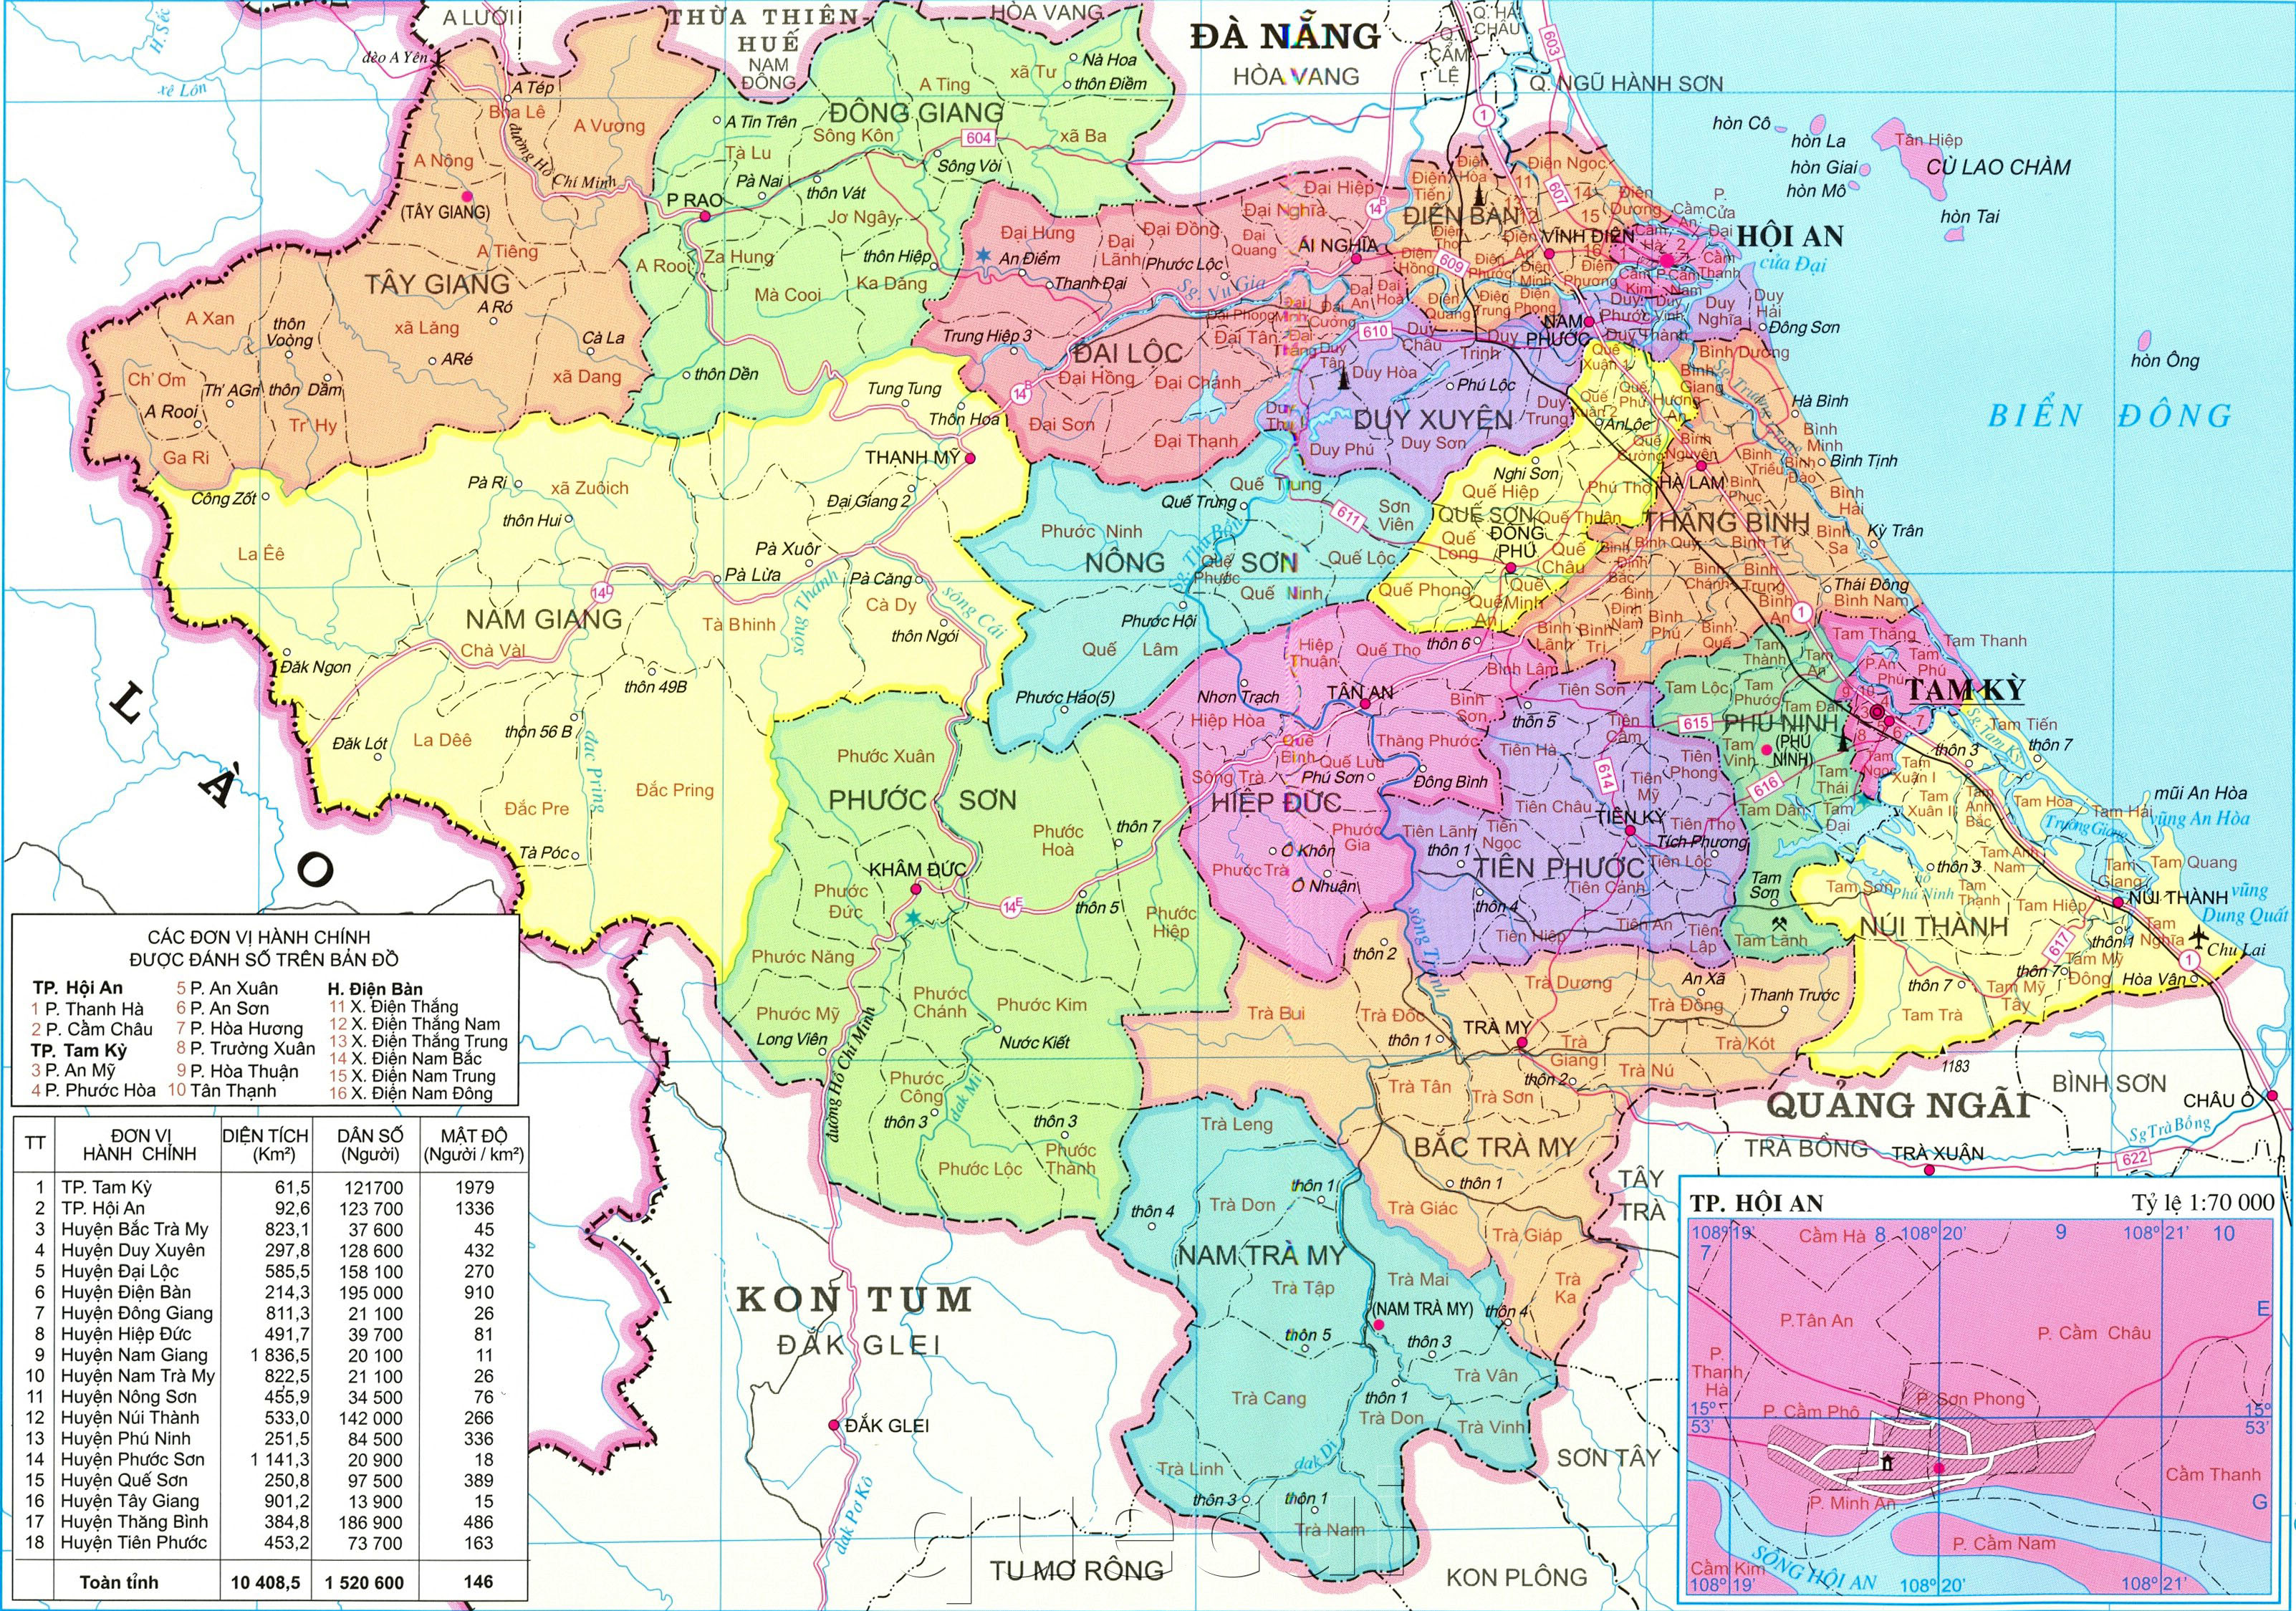 Tỉnh Quảng Nam đã trải qua một quá trình phát triển đáng kể trong những năm qua, và bản đồ hành chính tỉnh Quảng Nam năm 2024 sẽ cho thấy sự tiến bộ đó. Tỉnh đang chuyển đổi để trở thành trung tâm kinh tế trung tâm của miền Trung, với các dự án phát triển như cơ sở hạ tầng giao thông và các khu công nghiệp mới được xây dựng. Hãy tìm hiểu thêm về sự phát triển của Quảng Nam bằng bản đồ này.